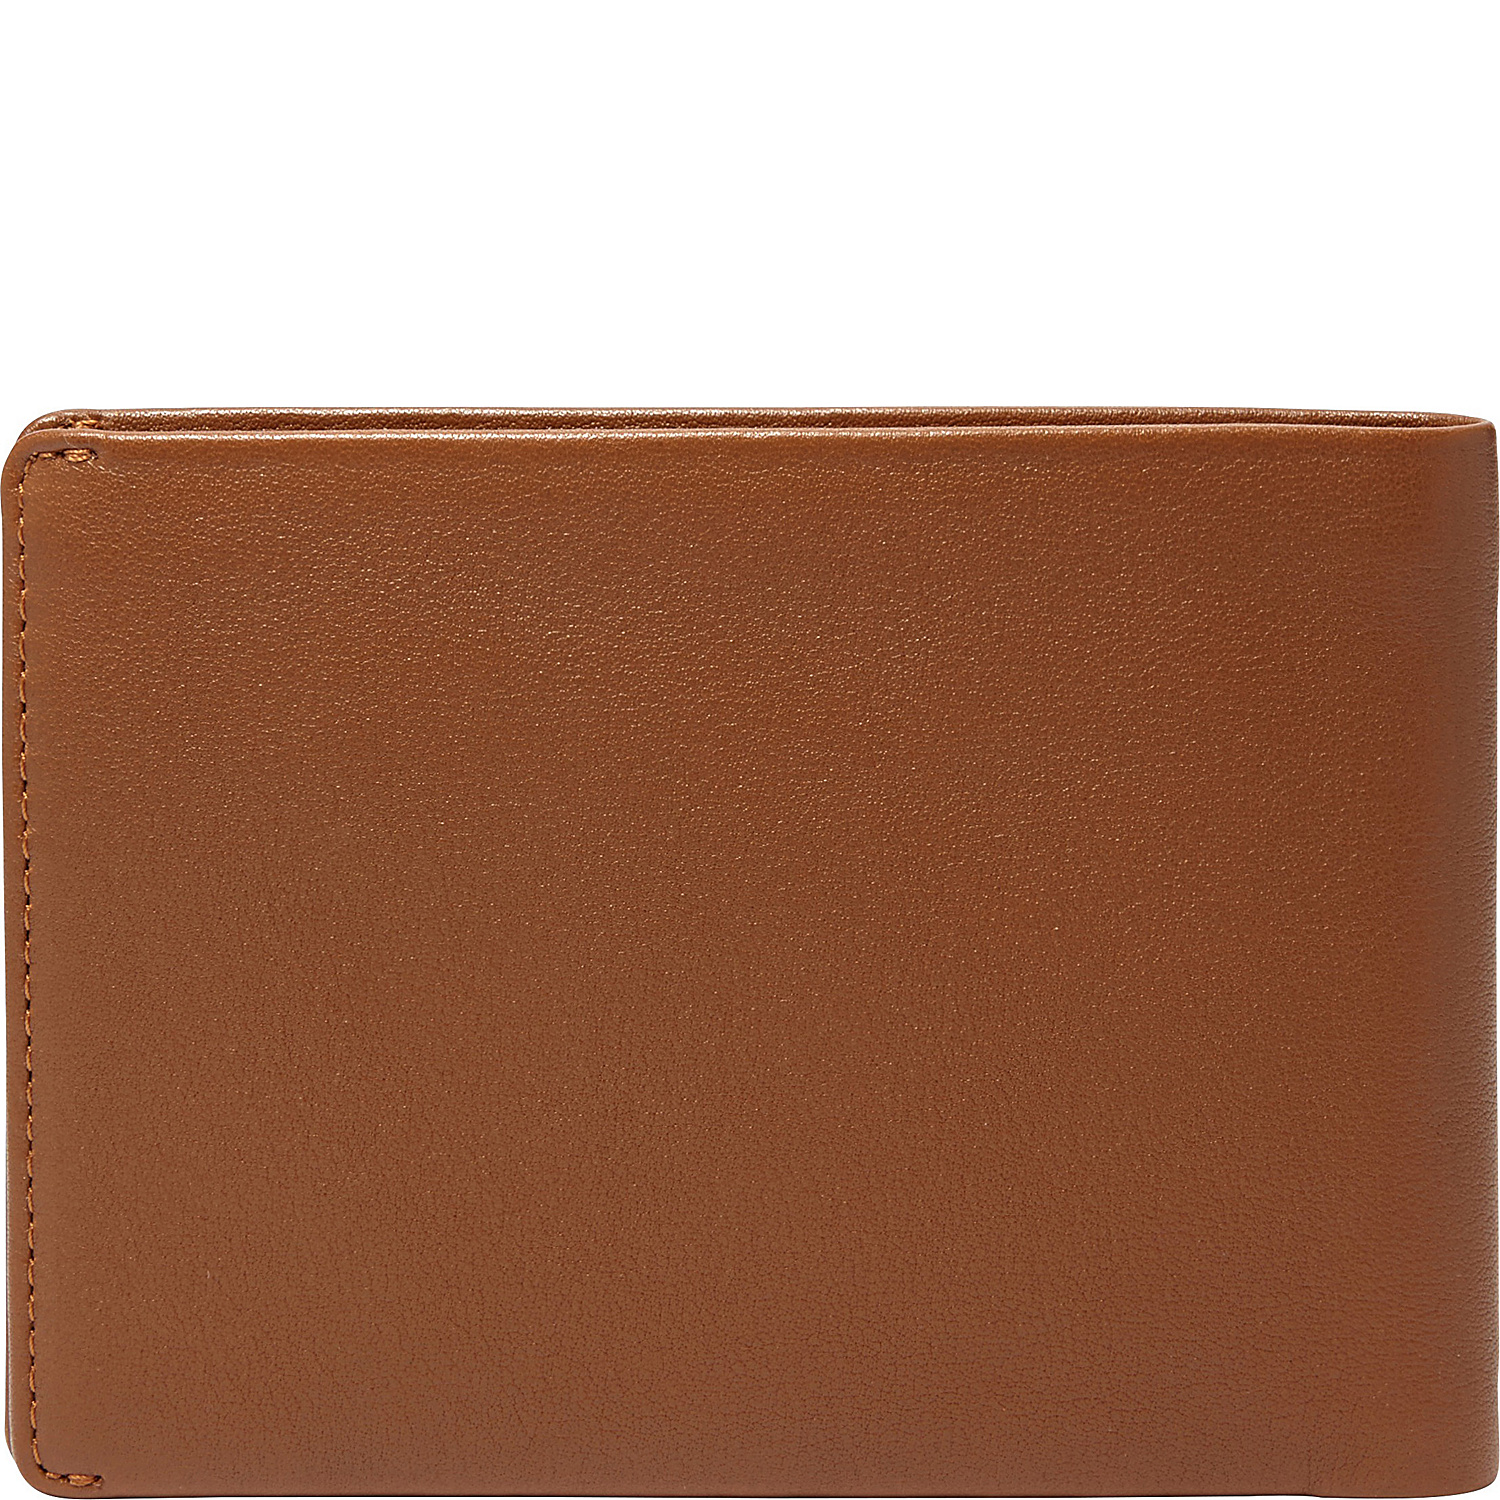 Joakim Leather Passport Wallet